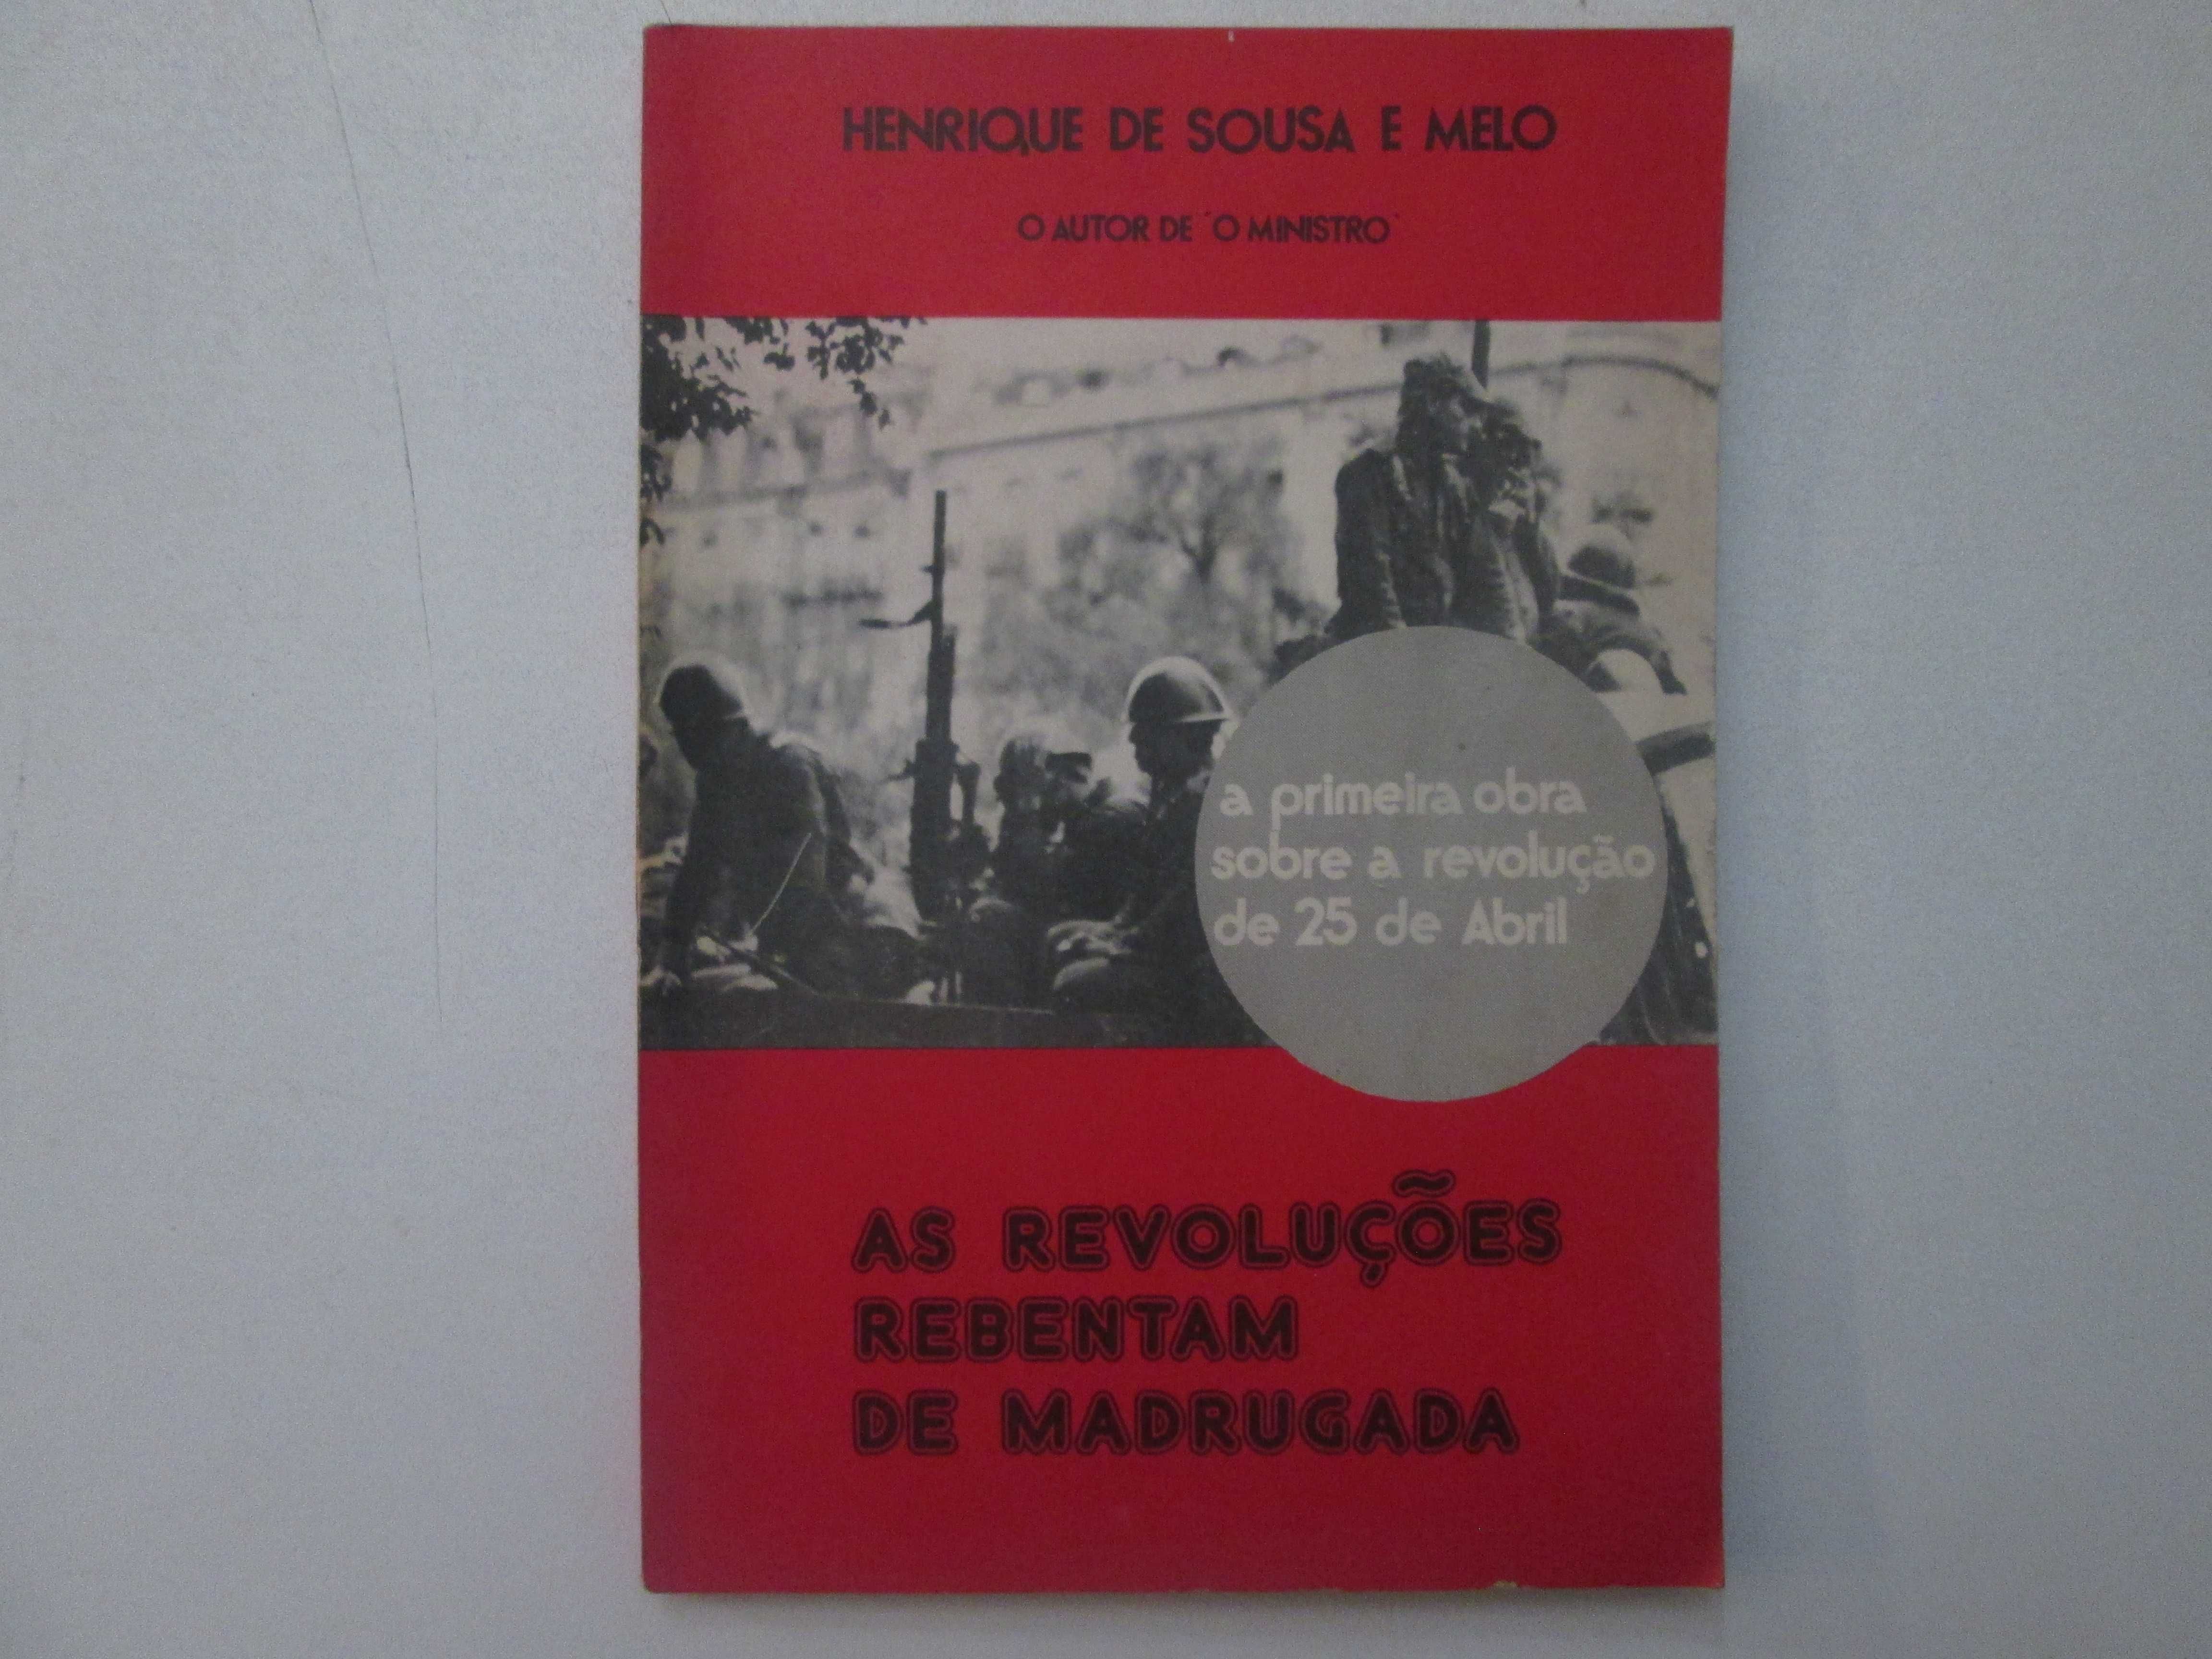 As revoluções rebentam de madrugada- Henrique de Sousa e Melo